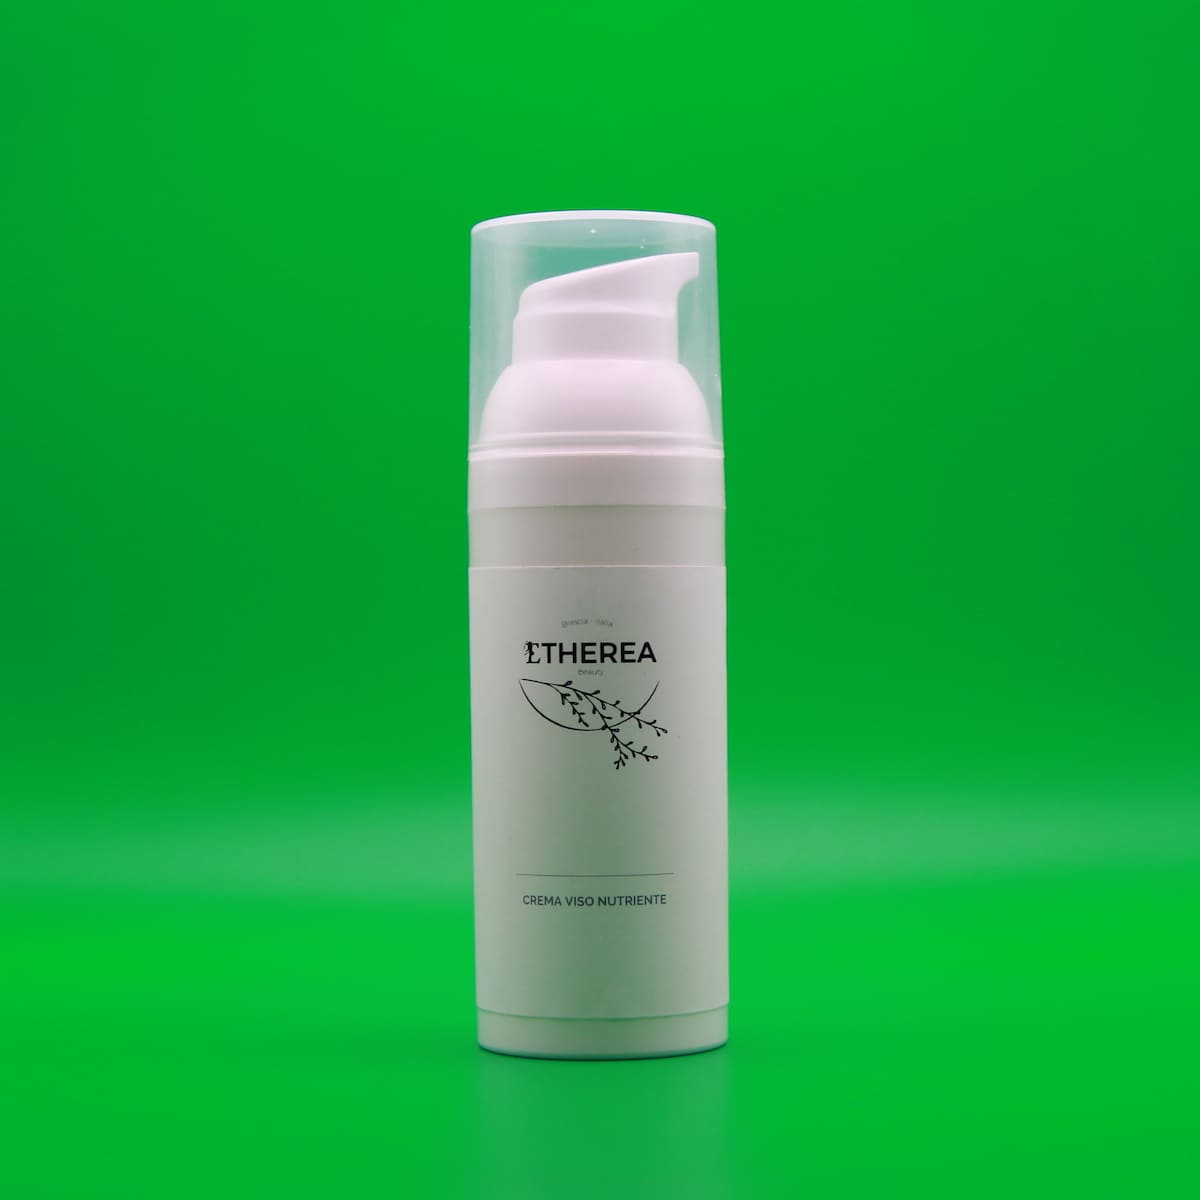 Etherea Beauty - Crema Viso Nutriente